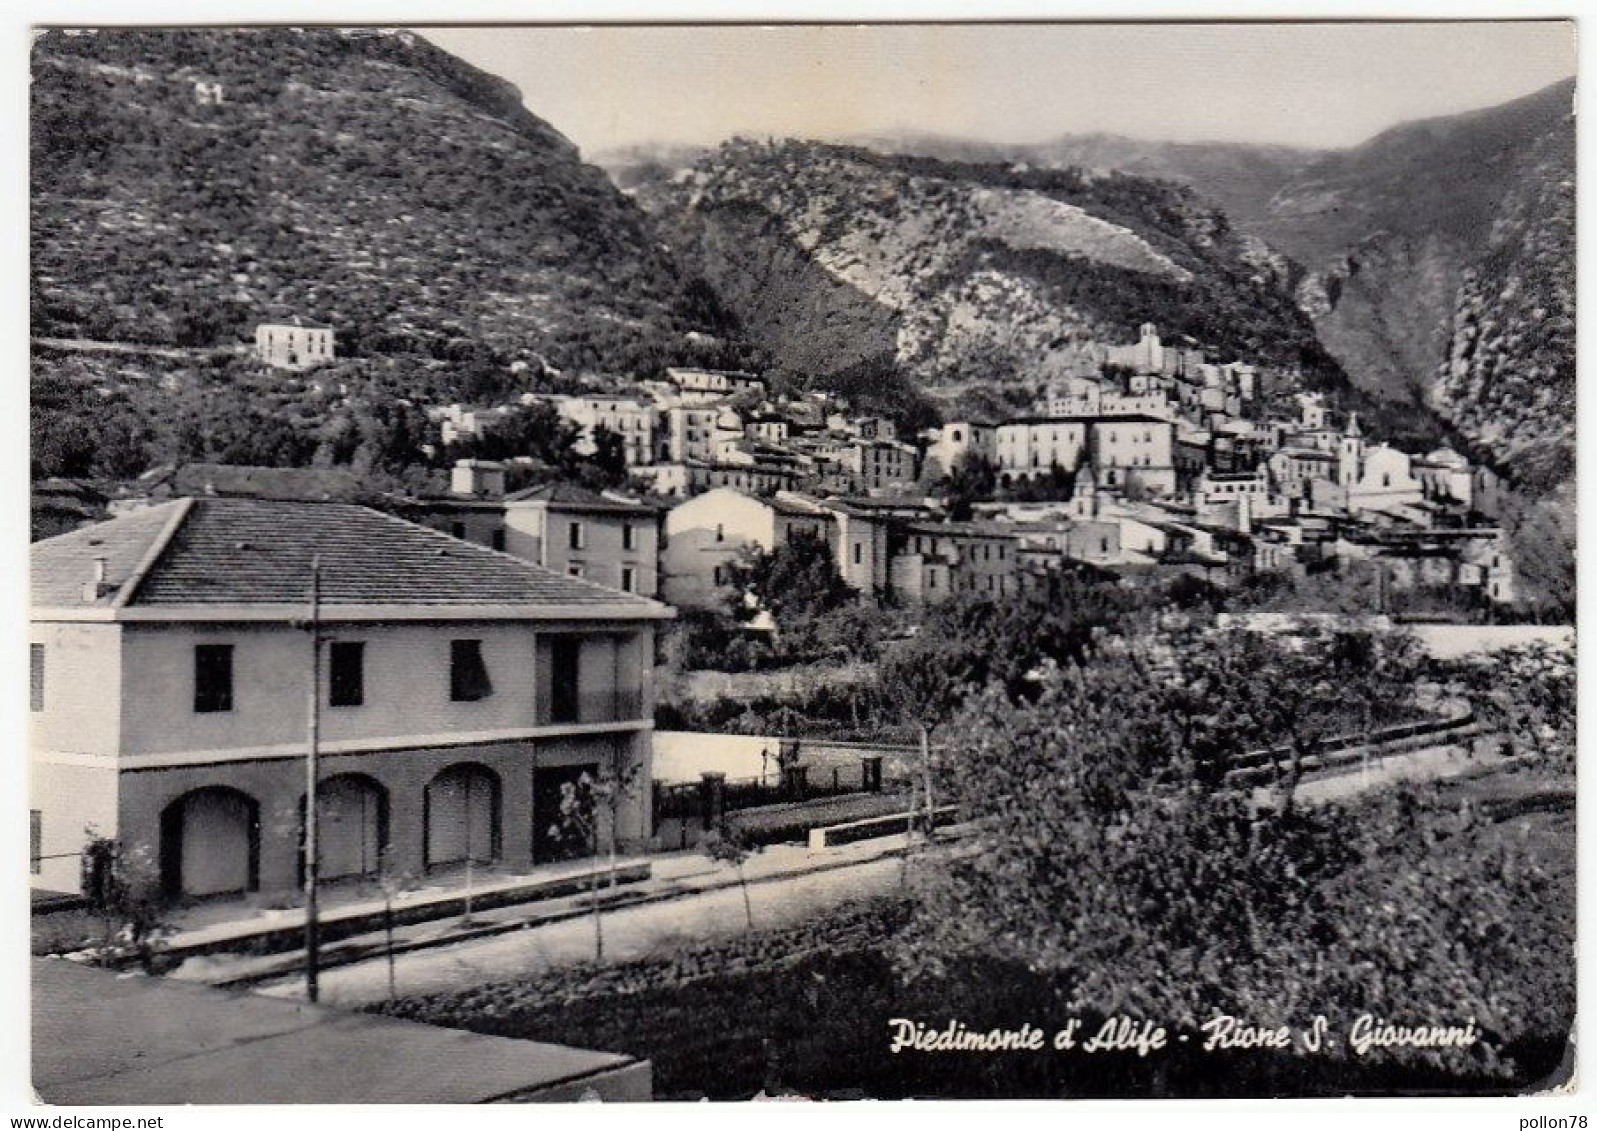 PIEDIMONTE D'ALIFE - RIONE SAN GIOVANNI - CASERTA - 1957 - Caserta